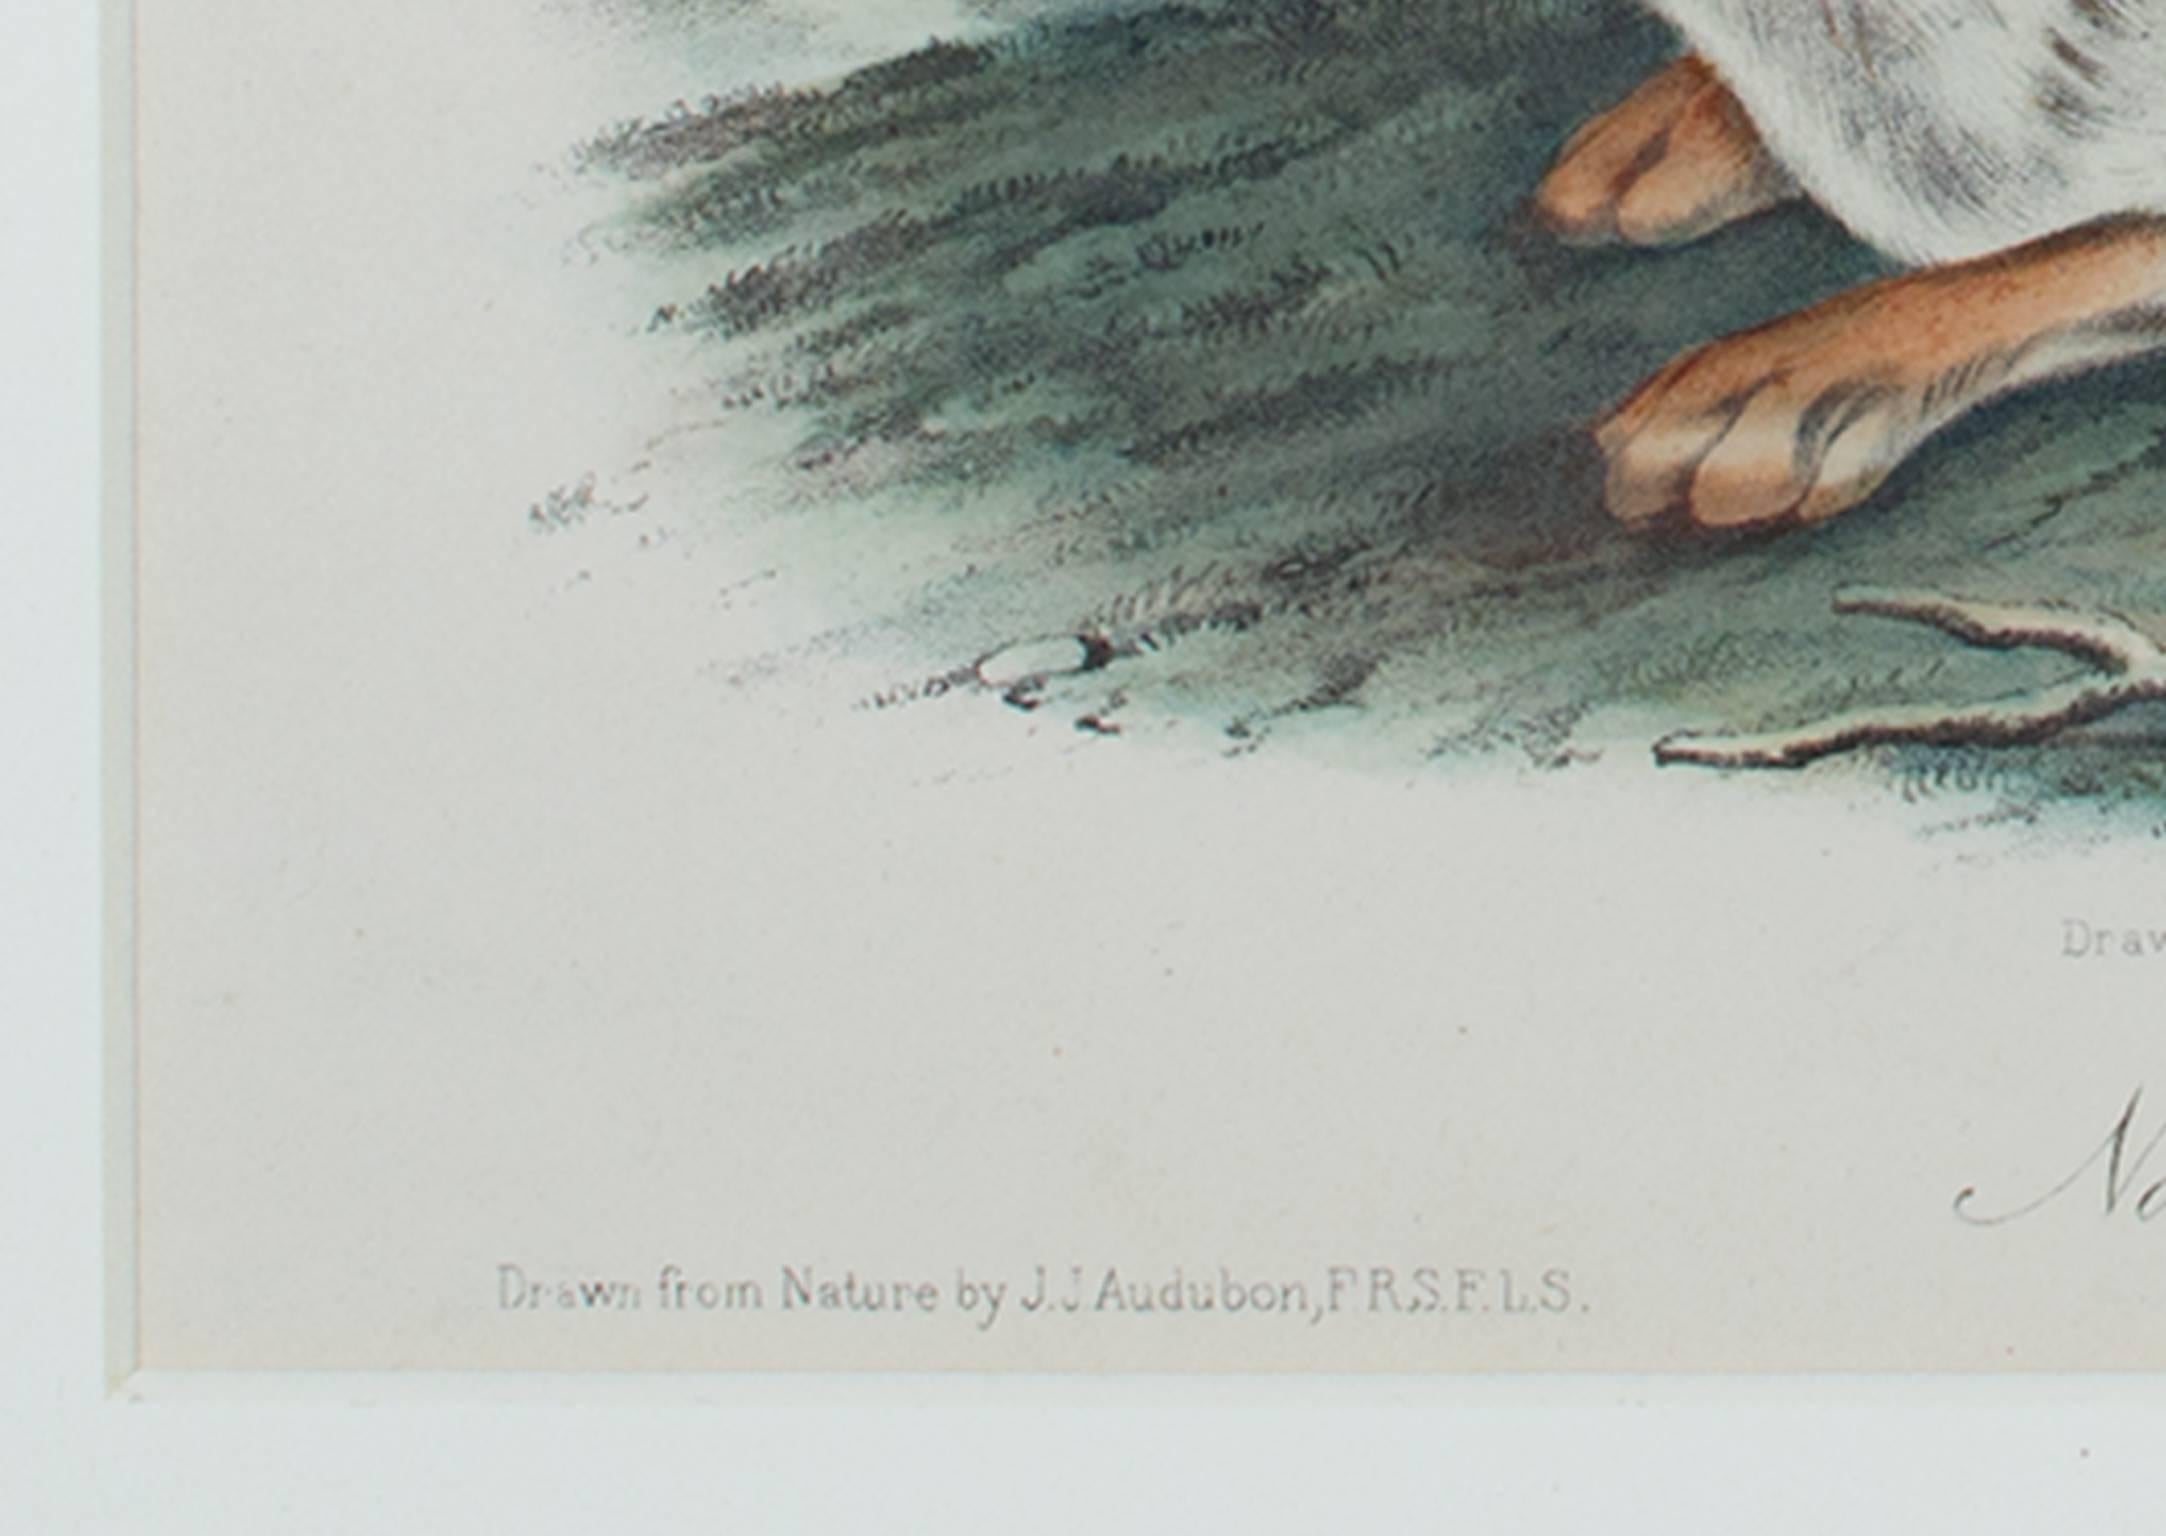 Farblithographie der Tierwelt des 19. Jahrhunderts, Hare-Tierdruck – Print von John James Audubon